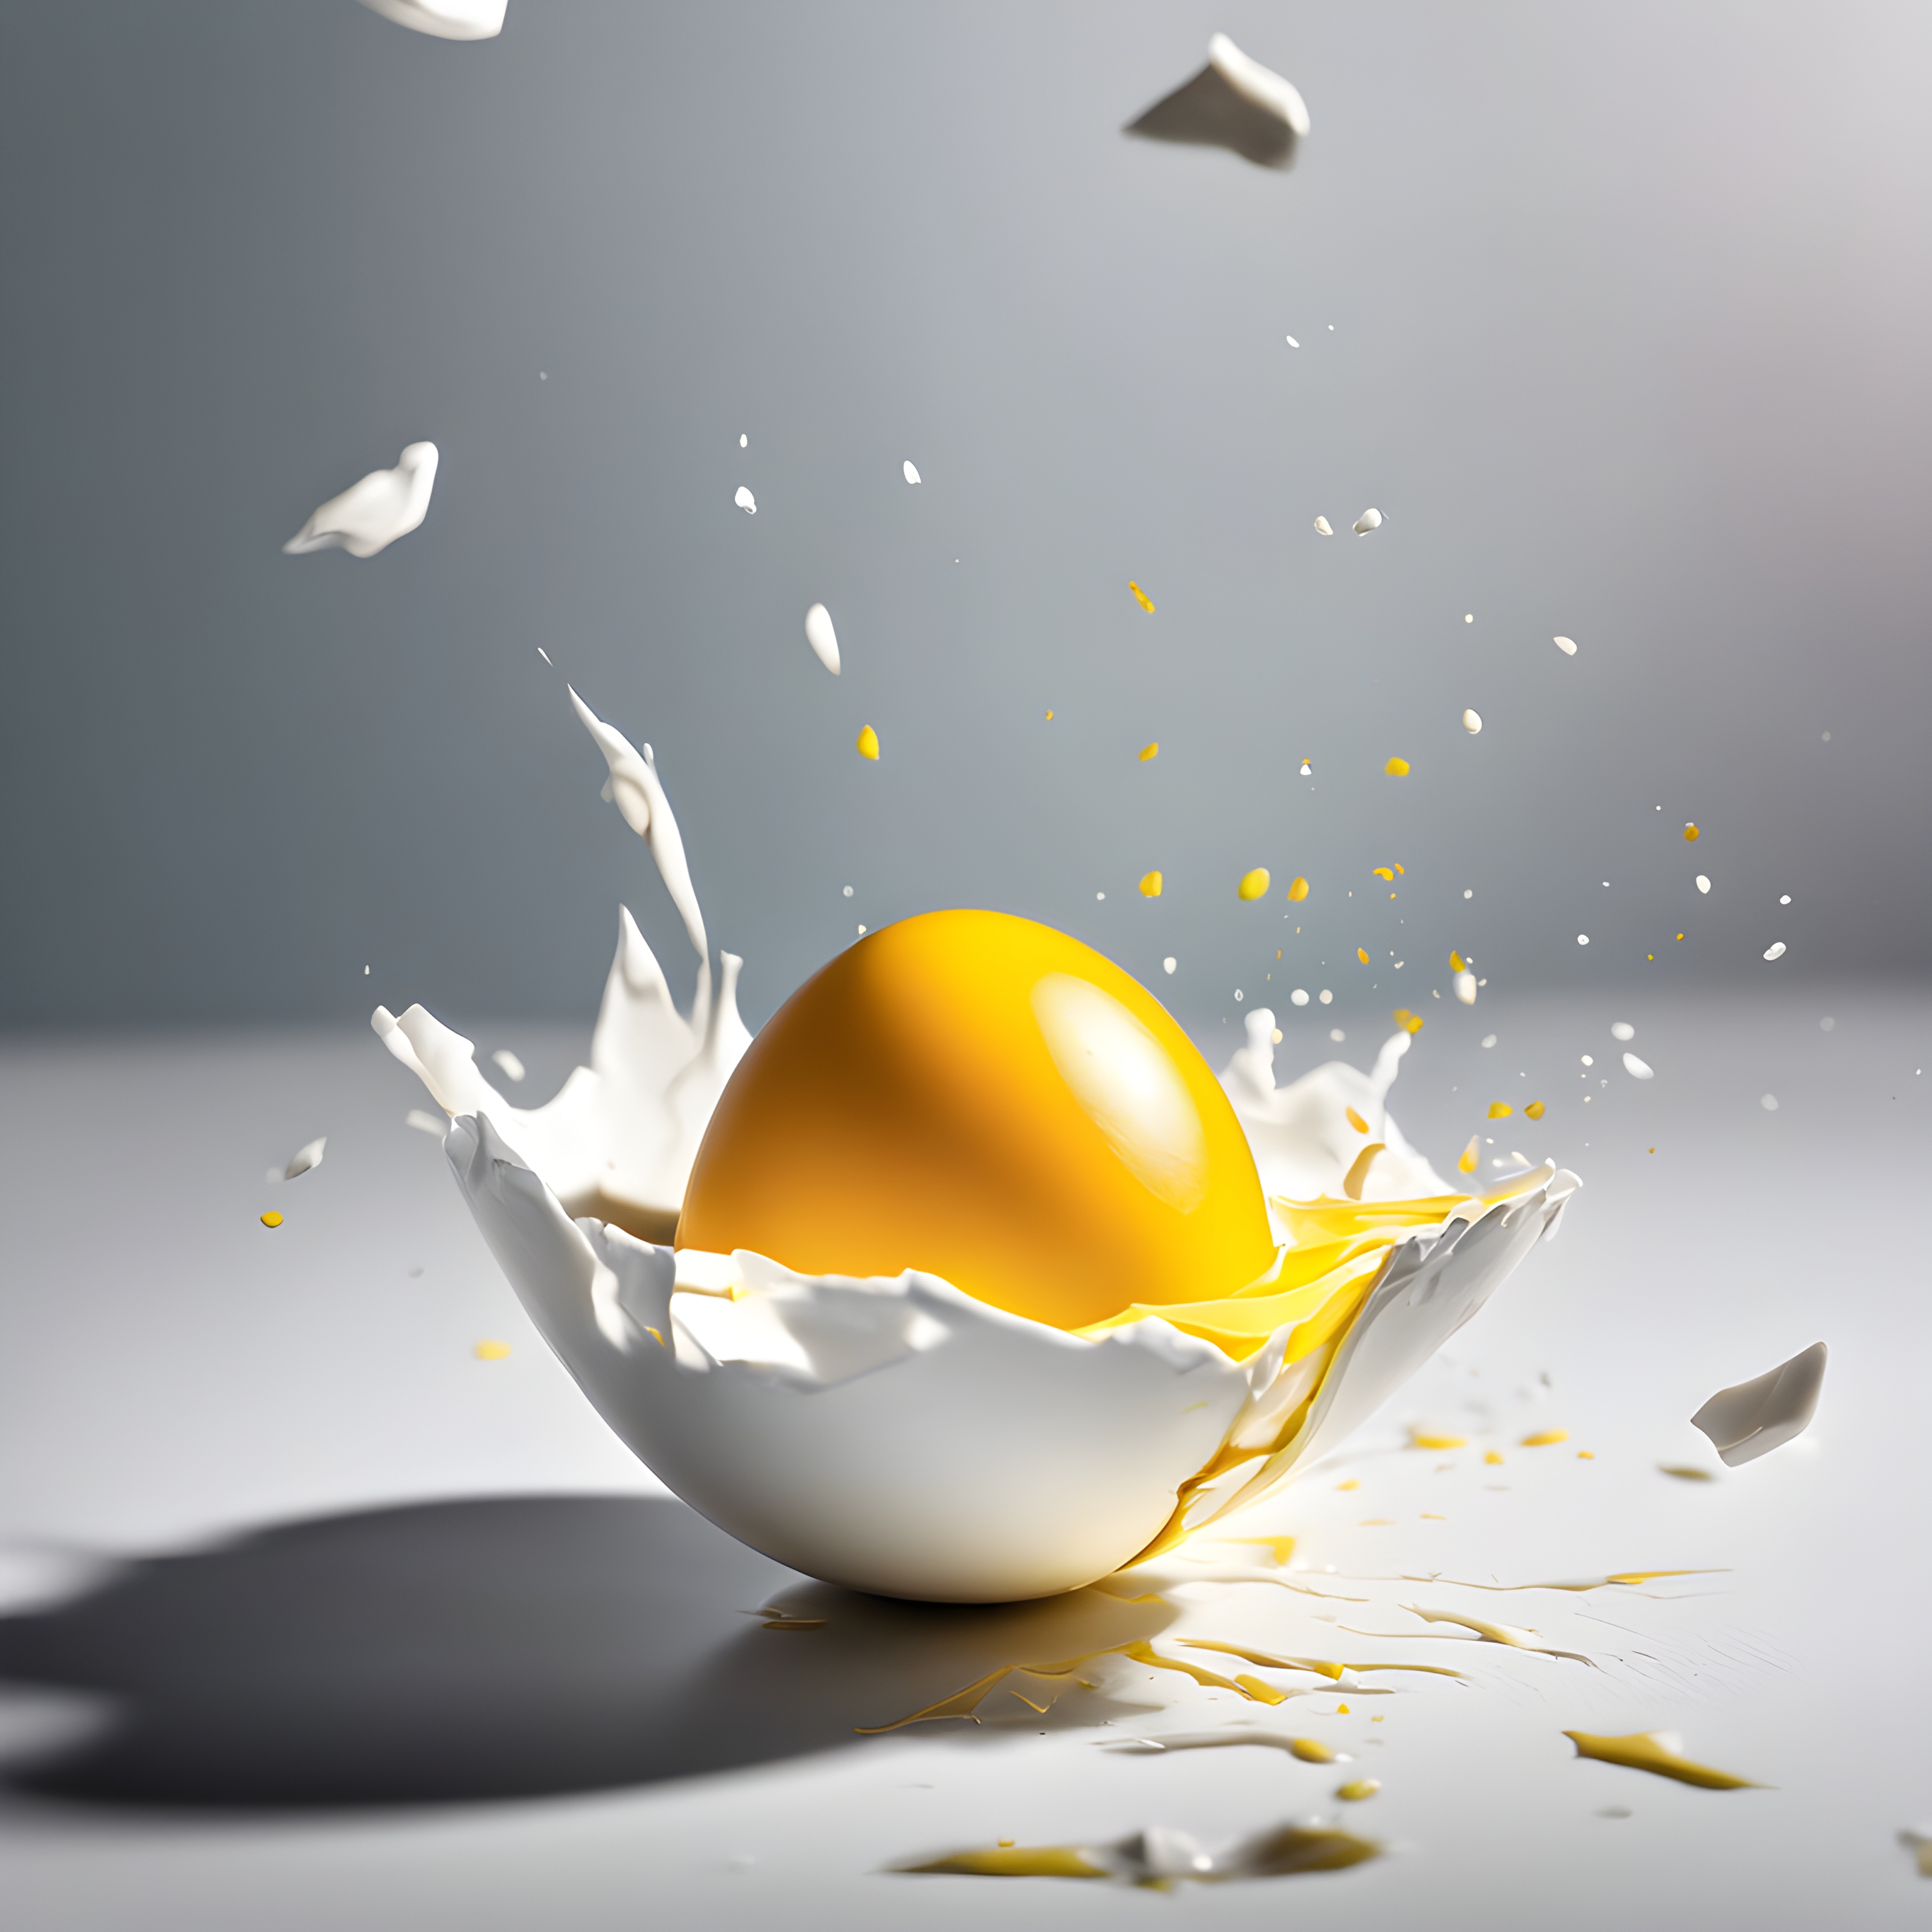 สร้างภาพ การแตกของไข่แบบสโลว์โมชั่นในอากาศ ไข่แดงมันๆ สีเหลืองสดใส ไข่แดงเด้งขึ้นไปในอากาศ ไข่ขาวเชื่อมต่อกับเปลือกไข่ เปลือกไข่แบ่งออกเป็นชิ้นๆ สวยงามมากใน สไตล์โจเอล โรบิสัน ถ่ายในรูปแบบการถ่ายภาพเชิงพาณิชย์ที่มีสีสันสดใส สมจริง